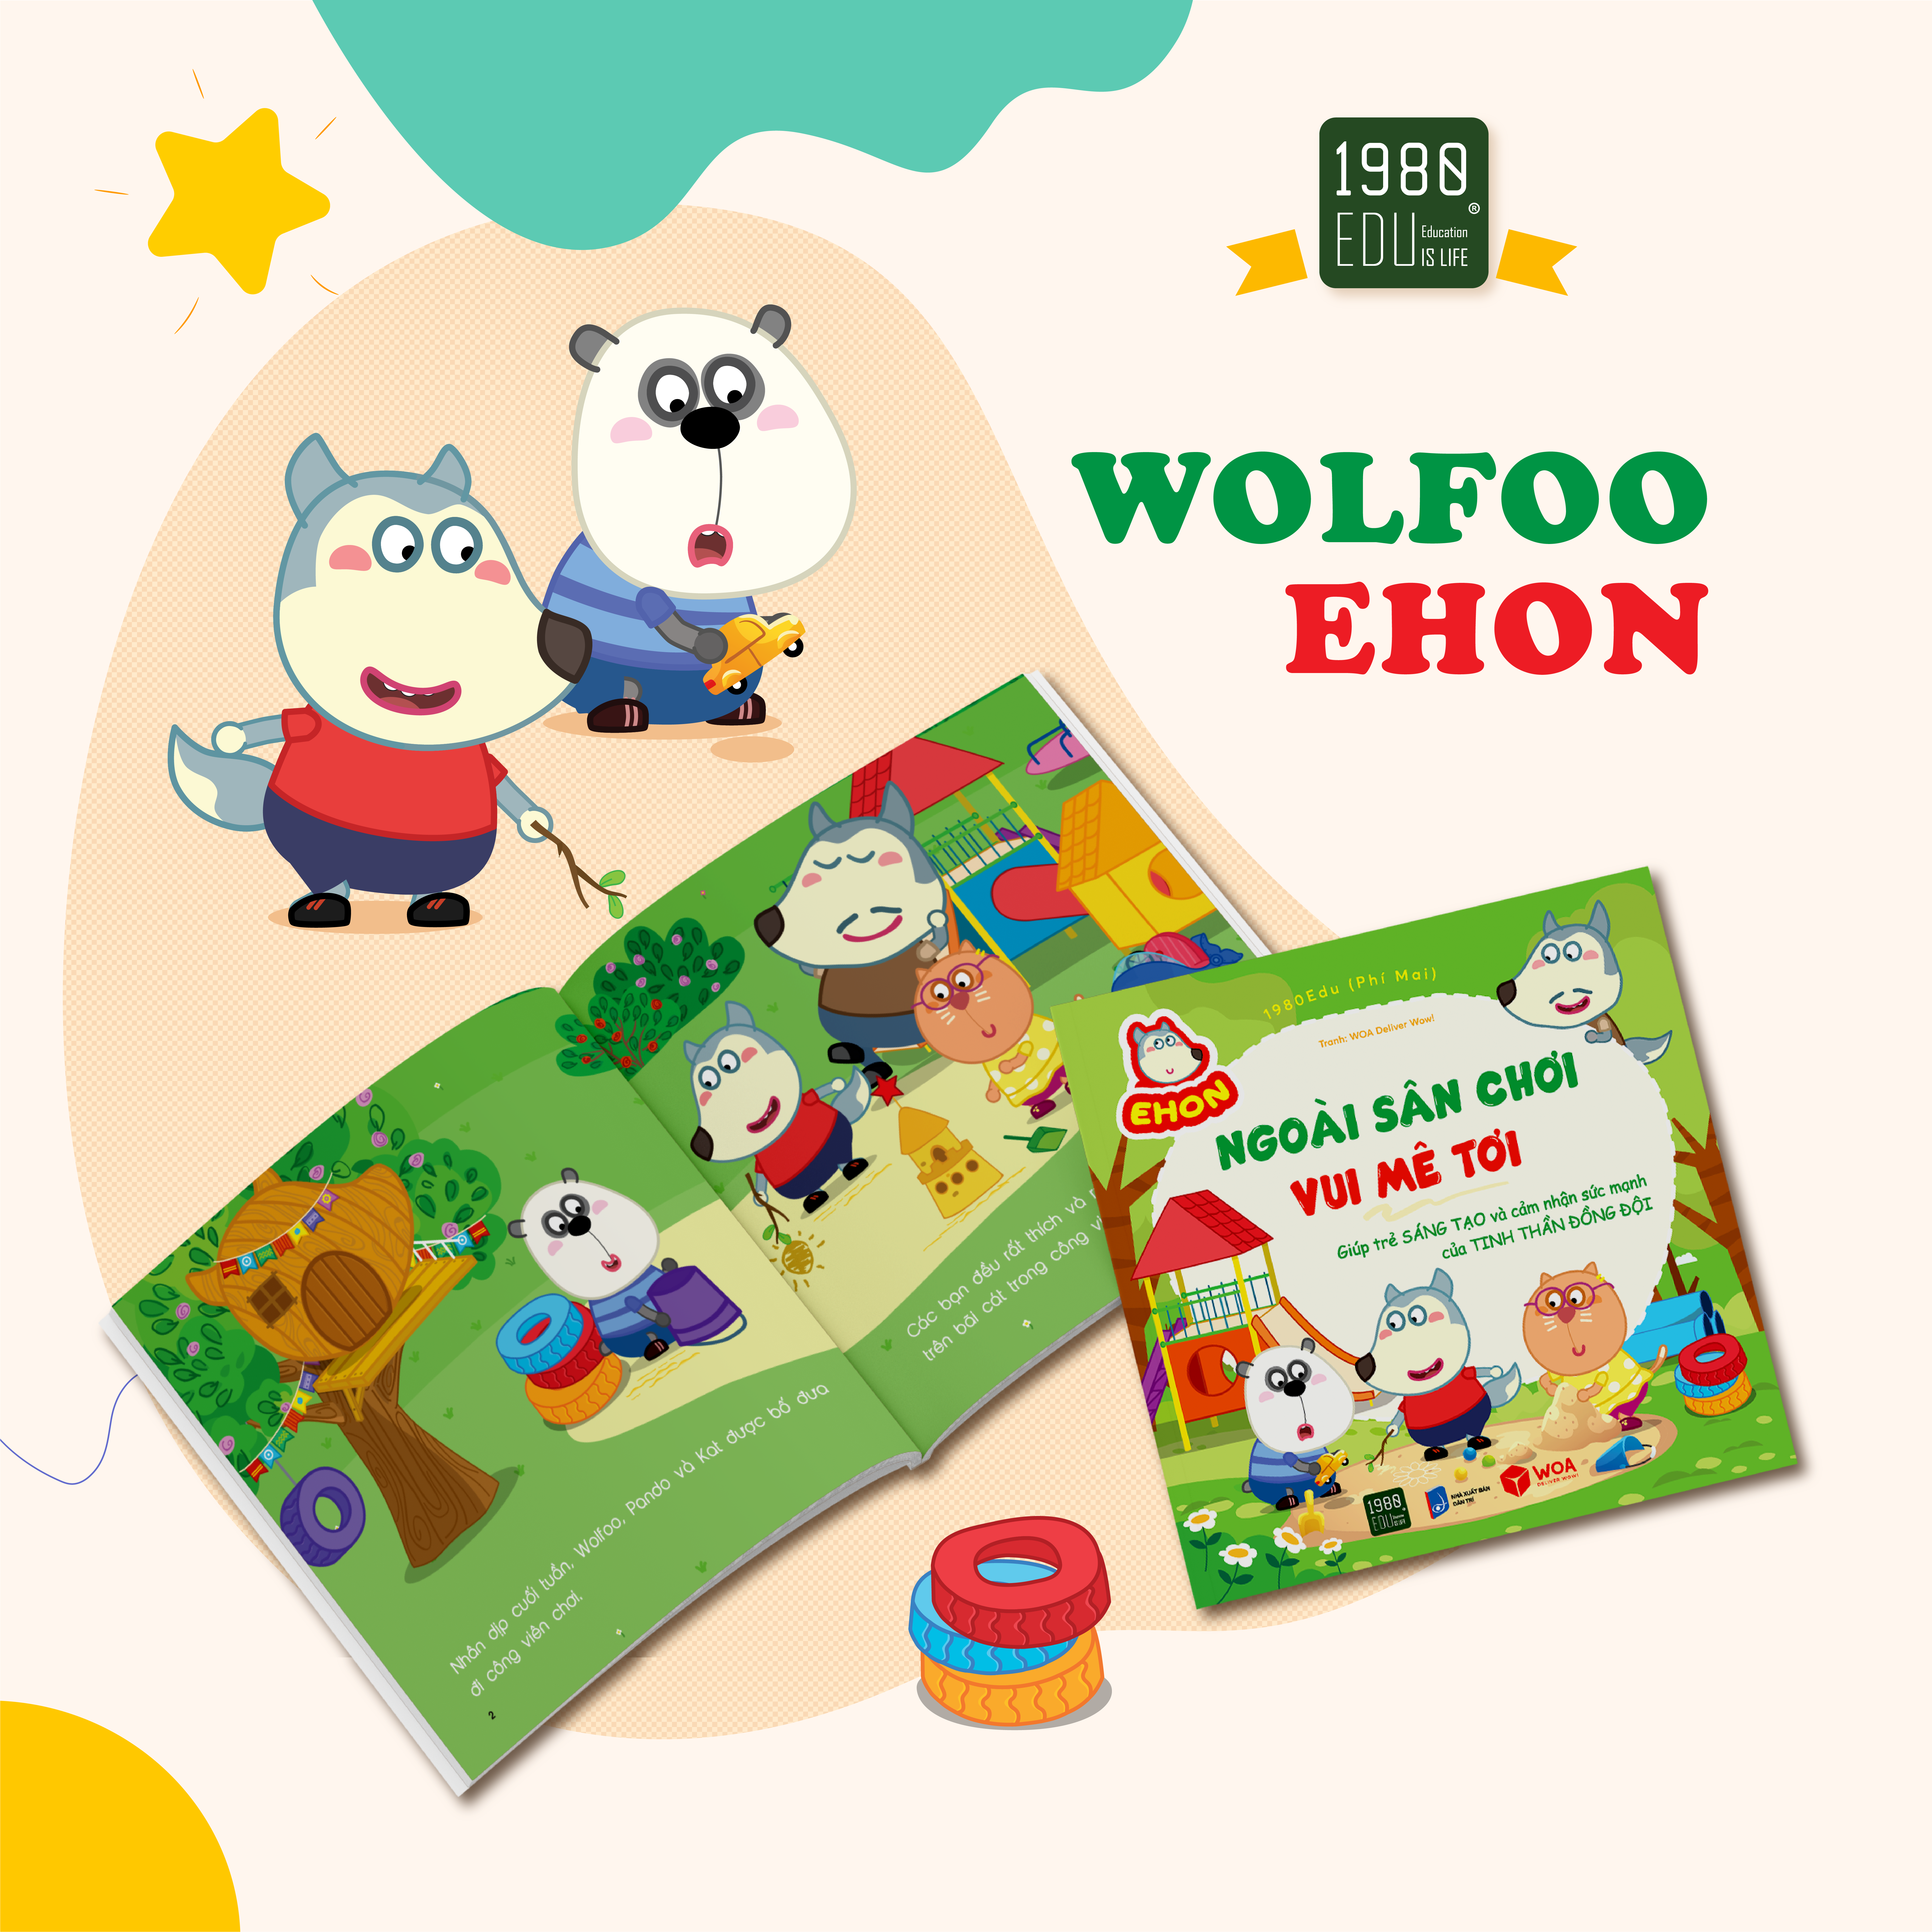 Sách Wolfoo Ehon - Ngoài sân chơi, vui mê tơi